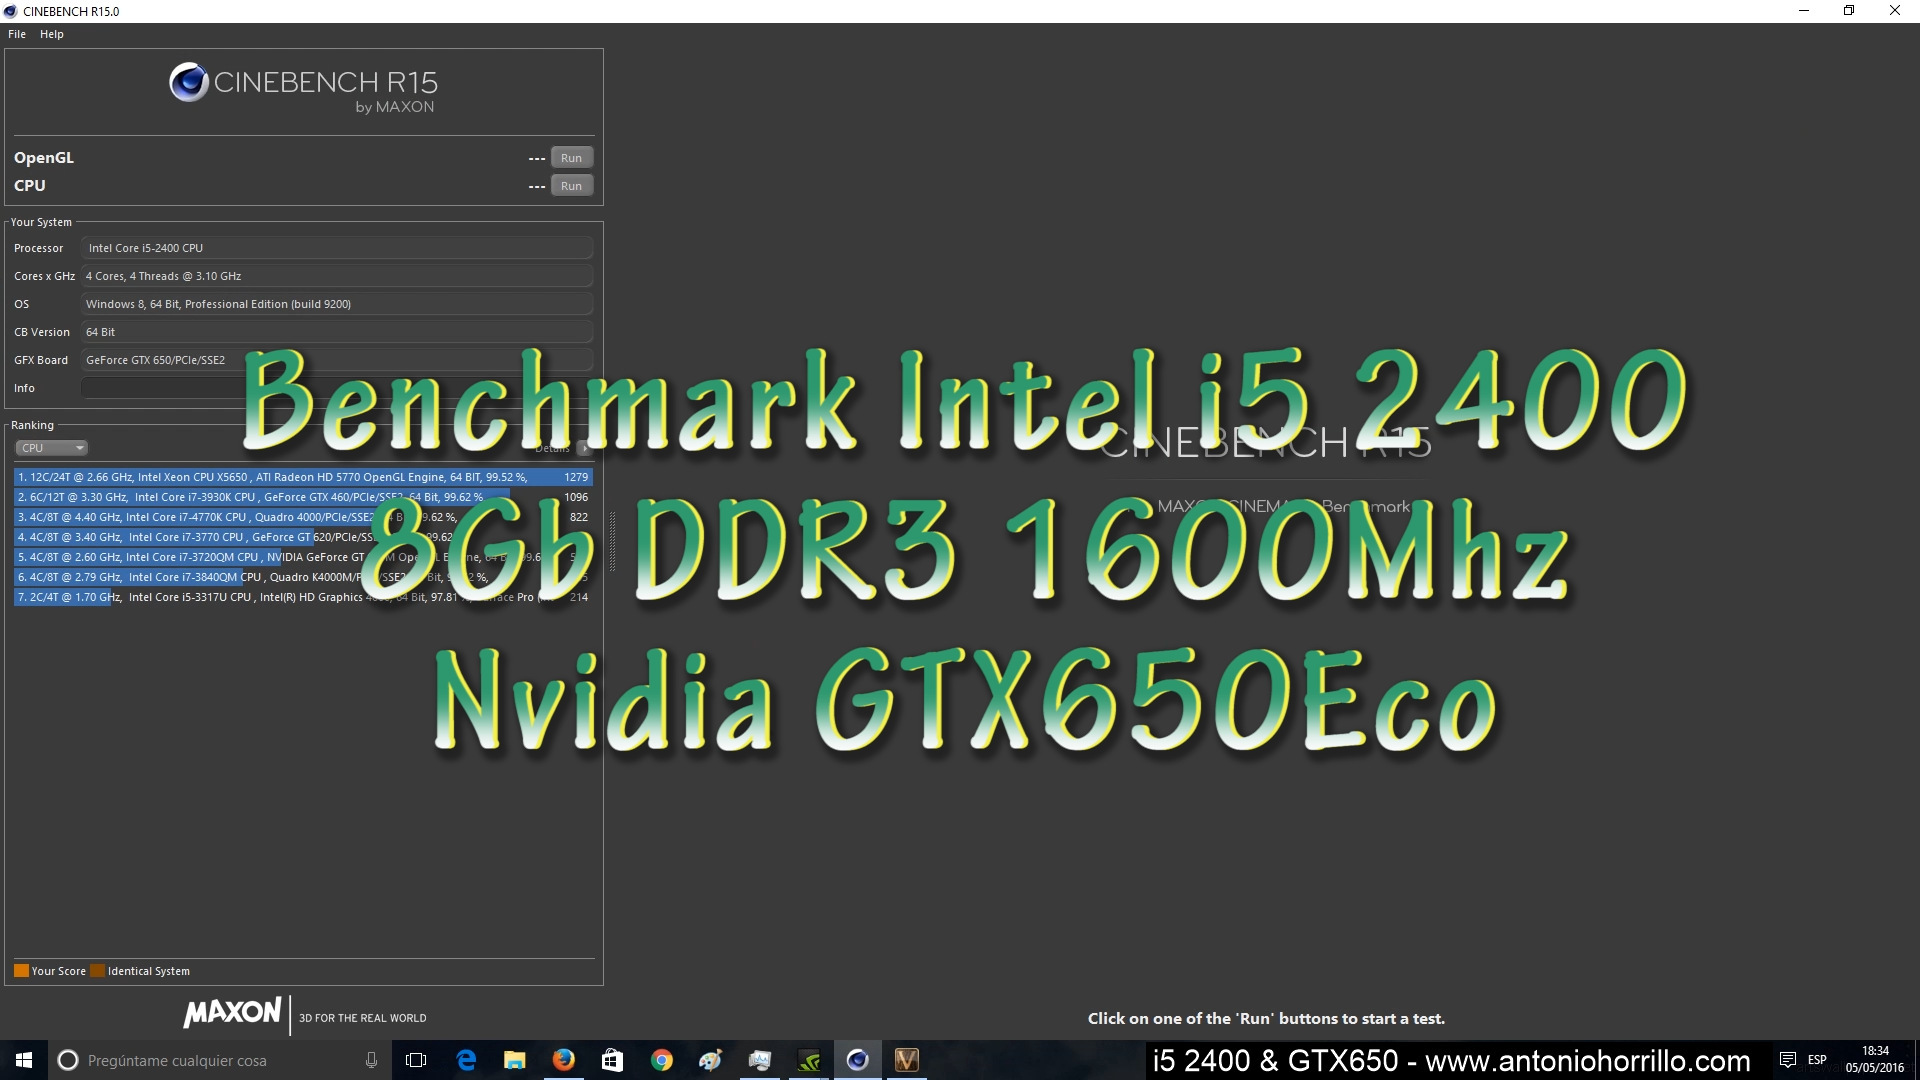 Benchmark Intel i5 2400 & Nvidia GTX650Eco.